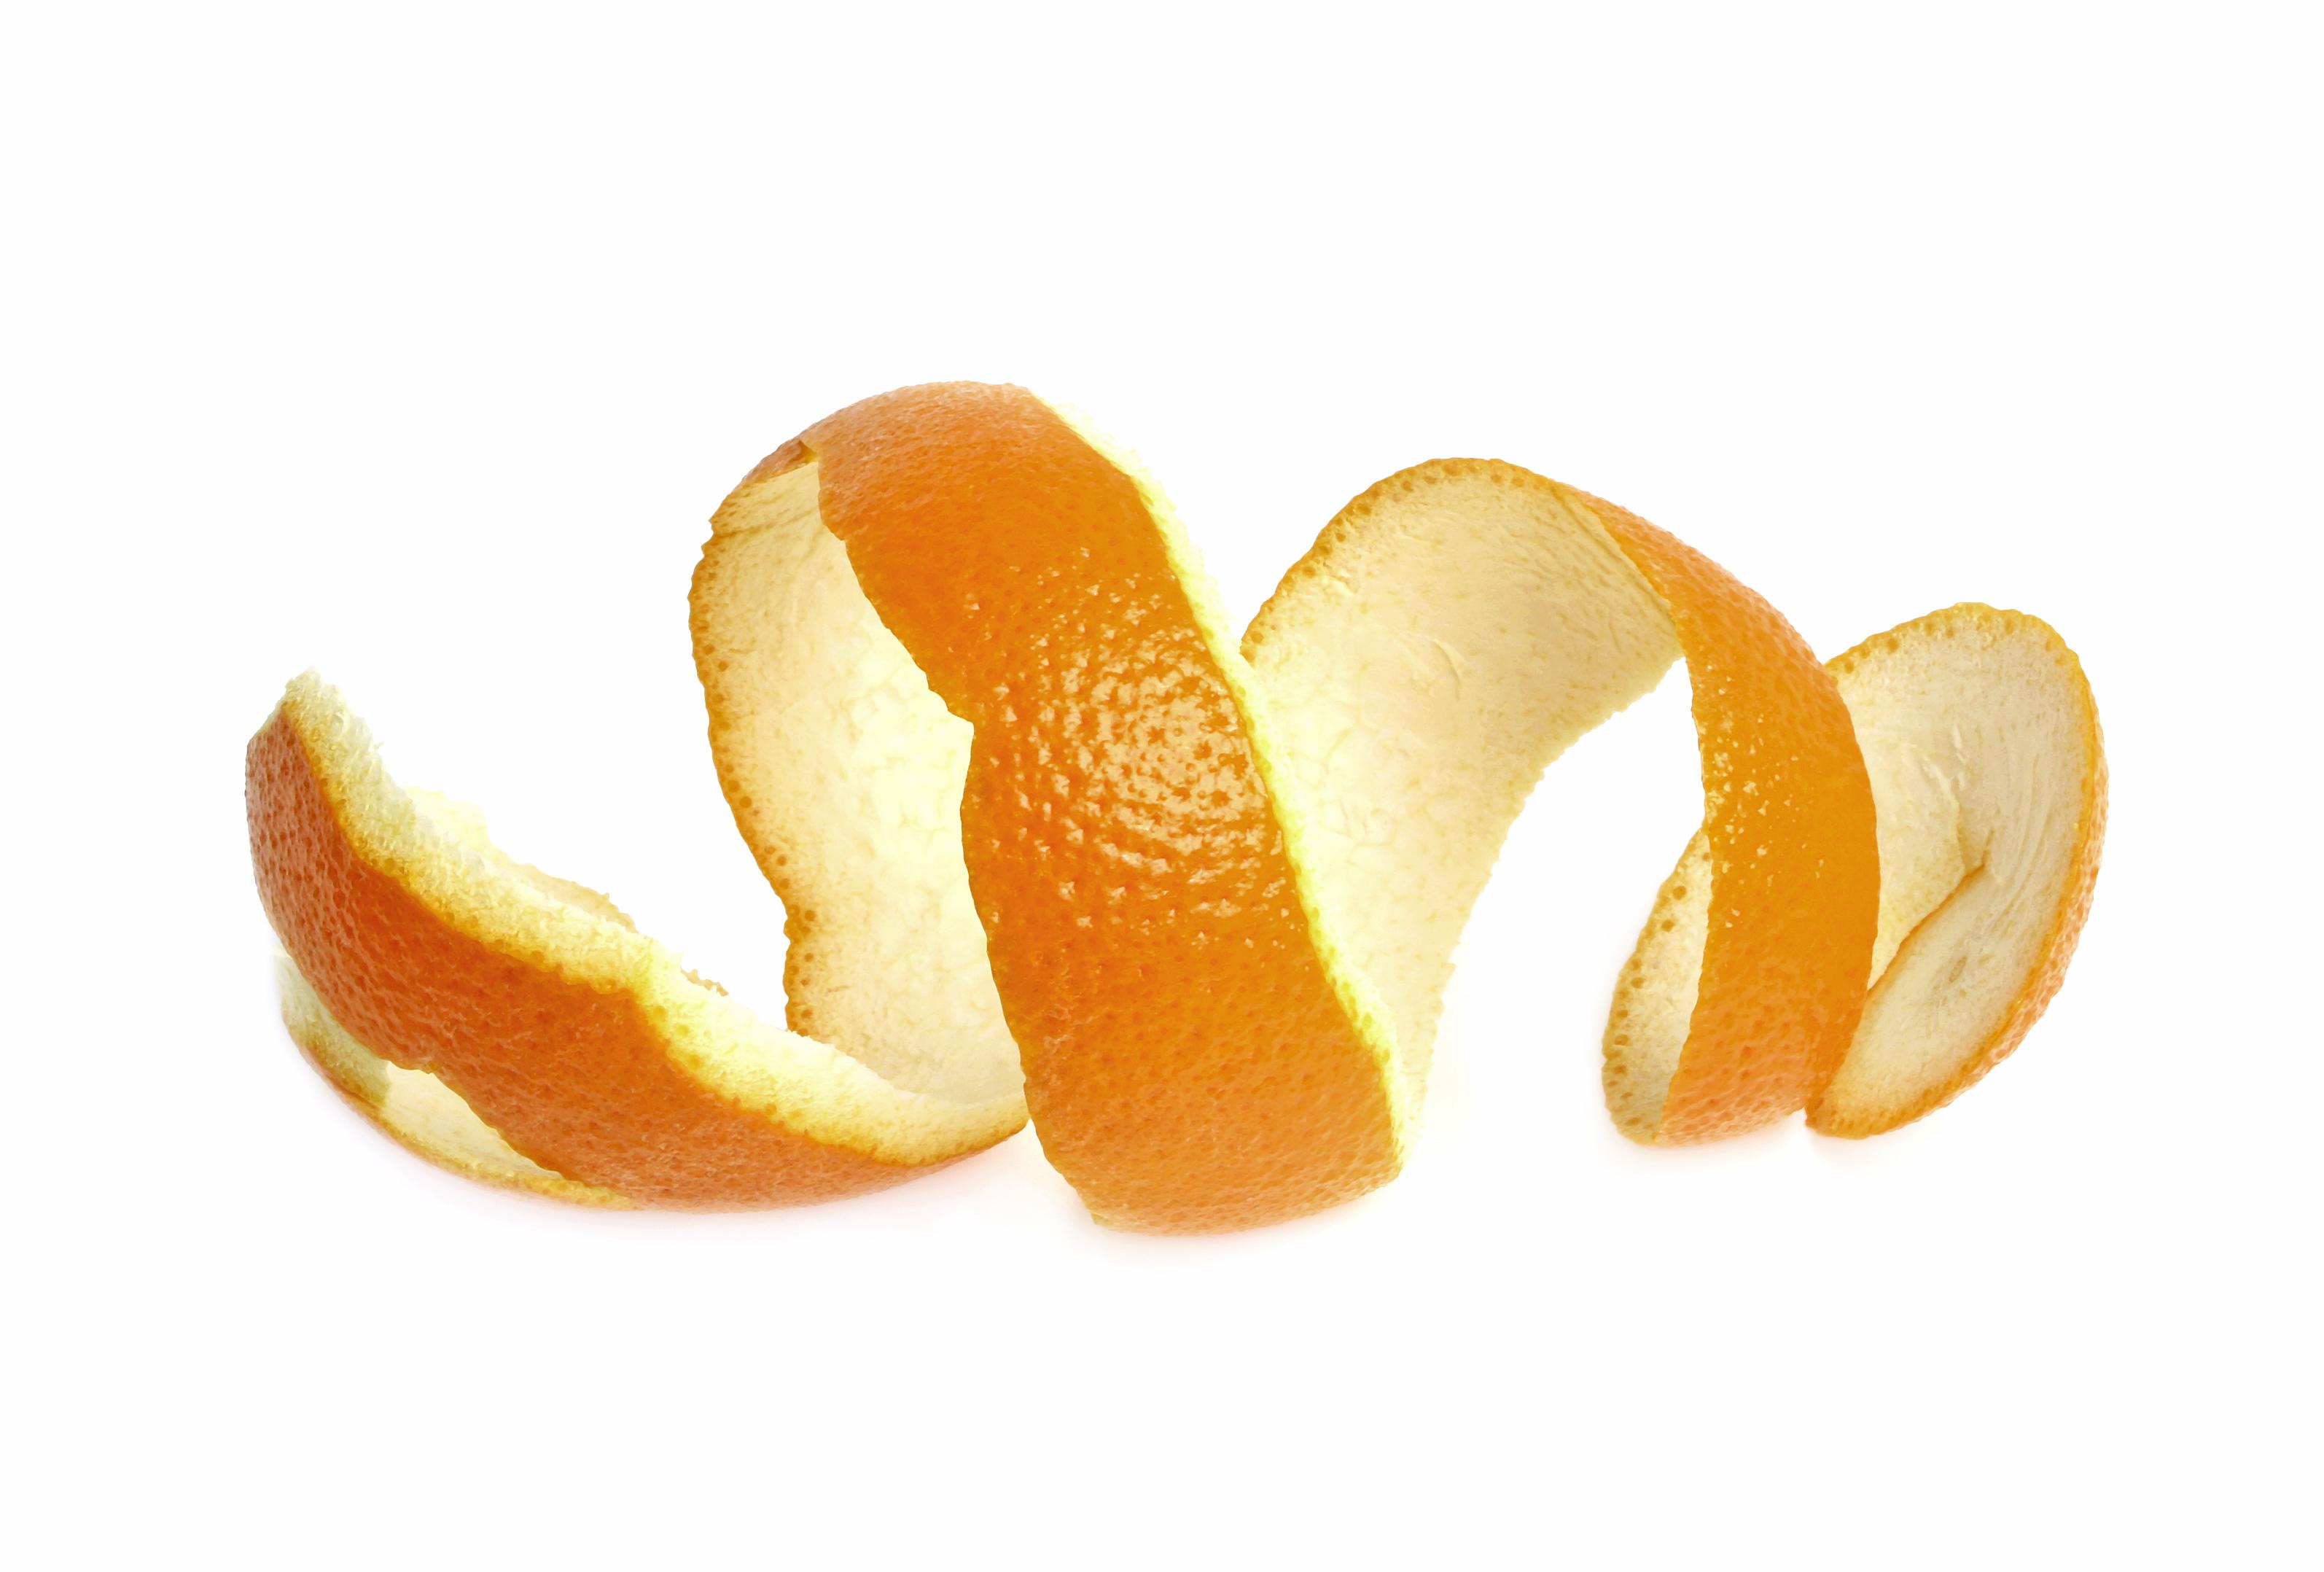 Кожура мандаринов апельсинов